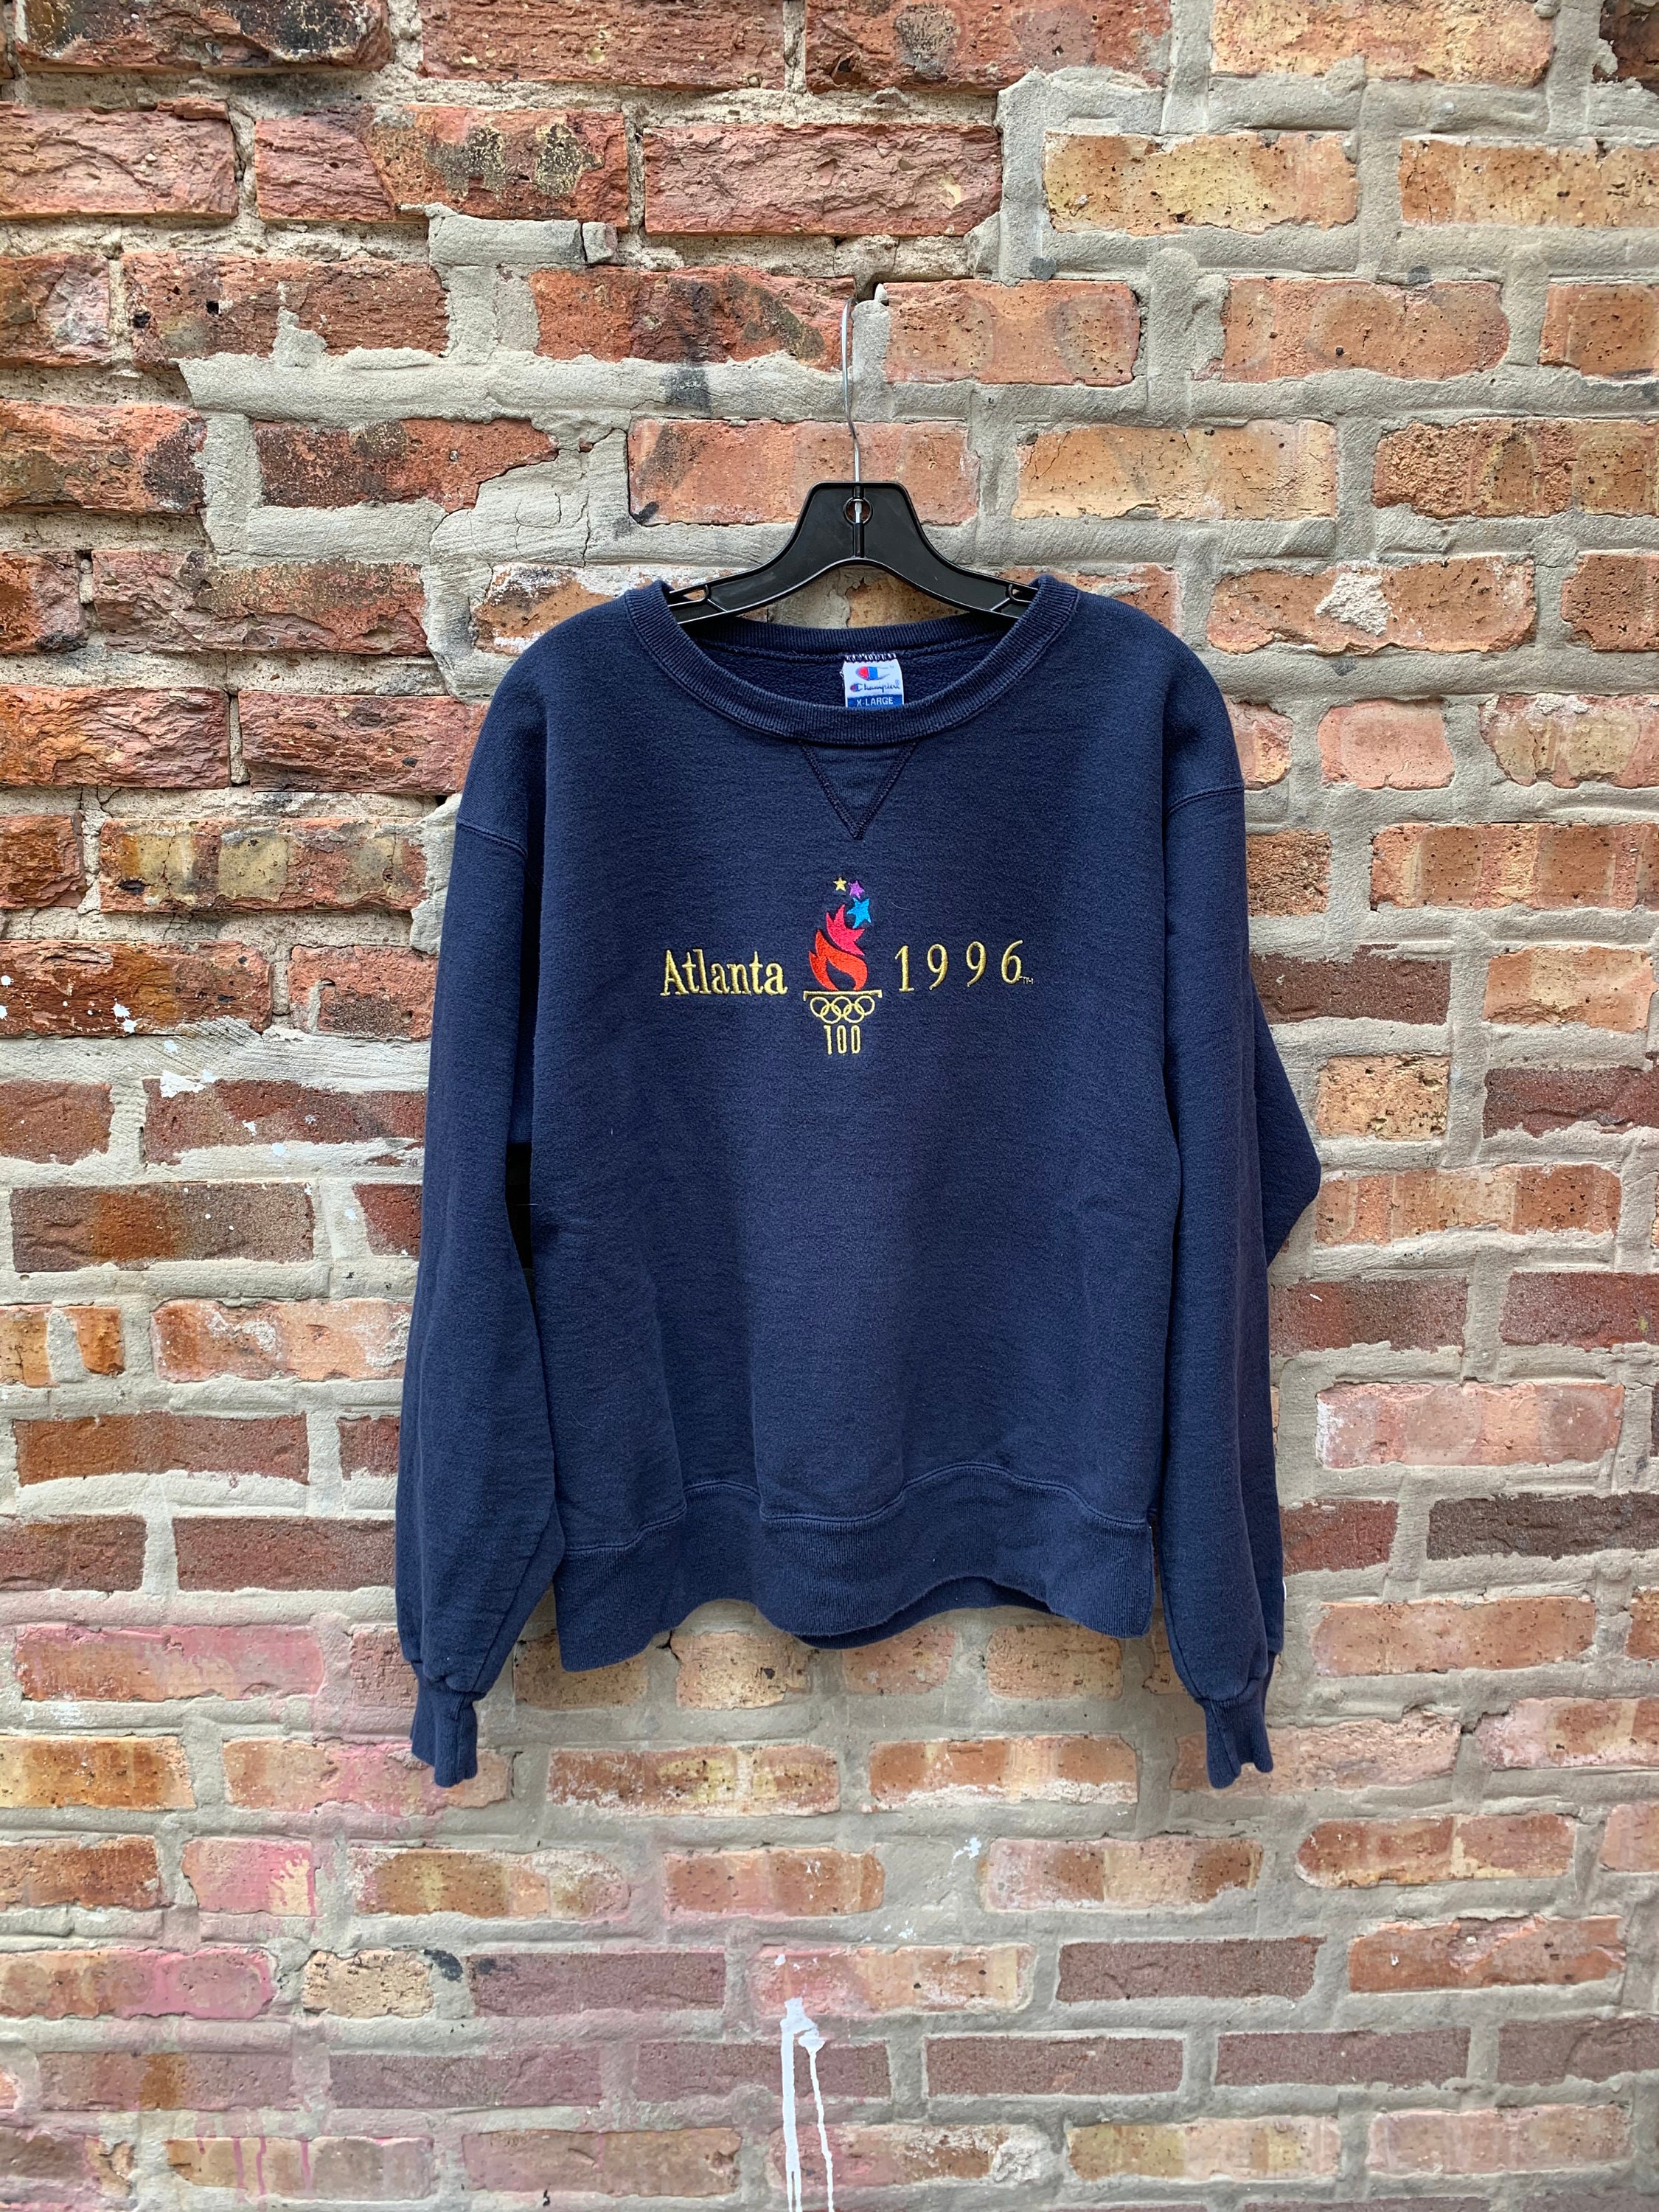 Vintage Champion Atlanta 96 Olympics Sweatshirt Size | Etsy UK